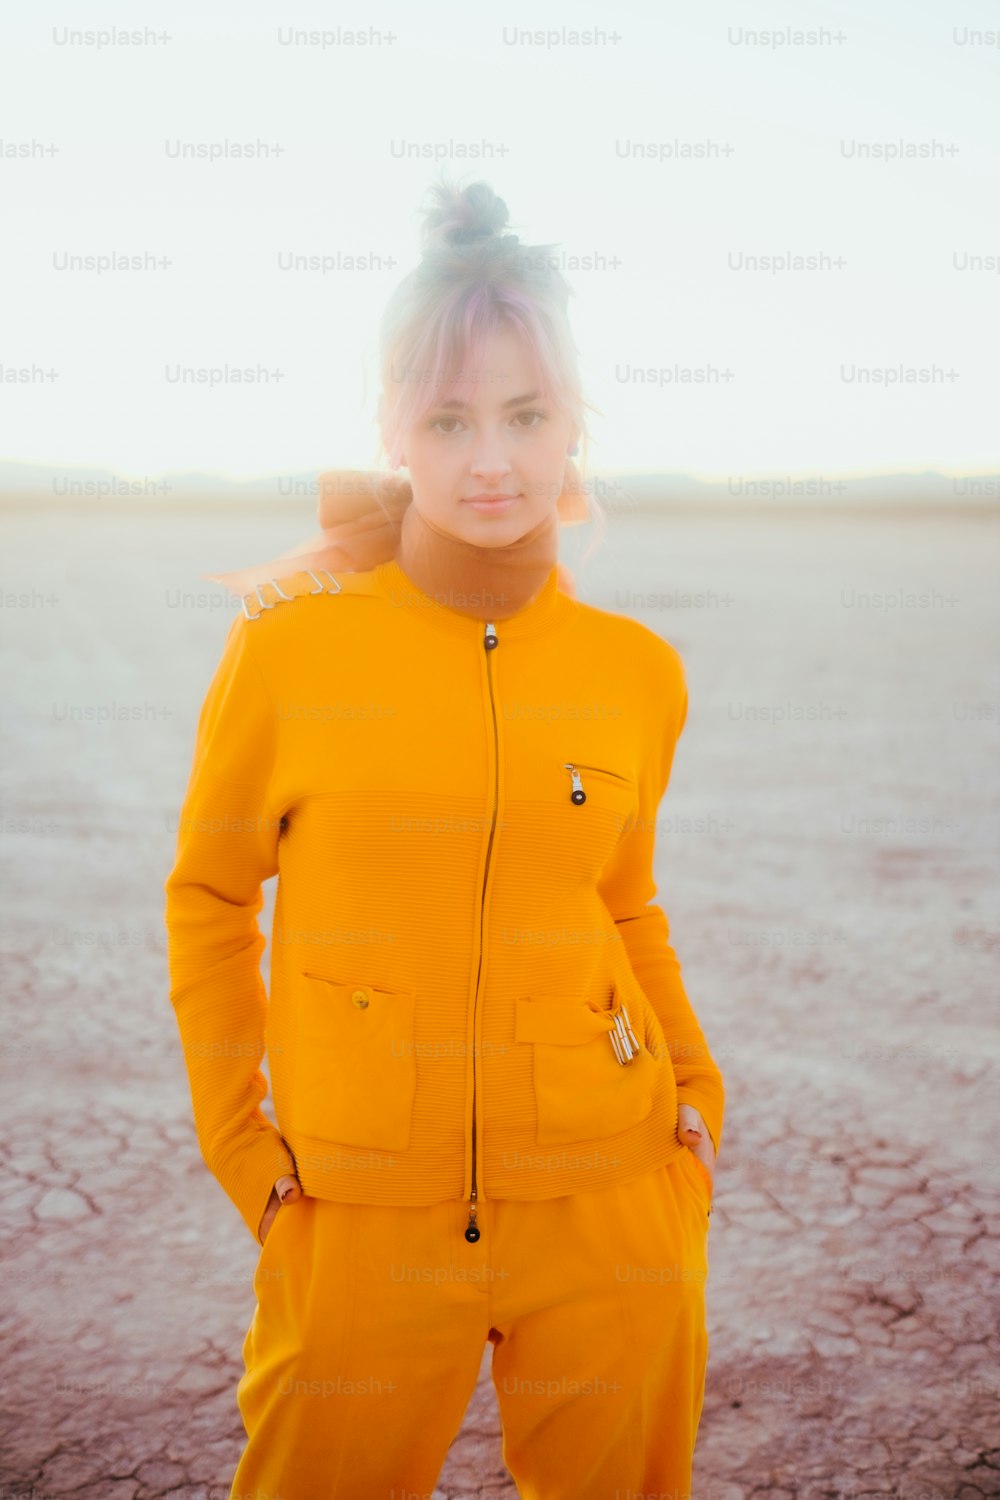 Una mujer con un traje amarillo parada en un desierto